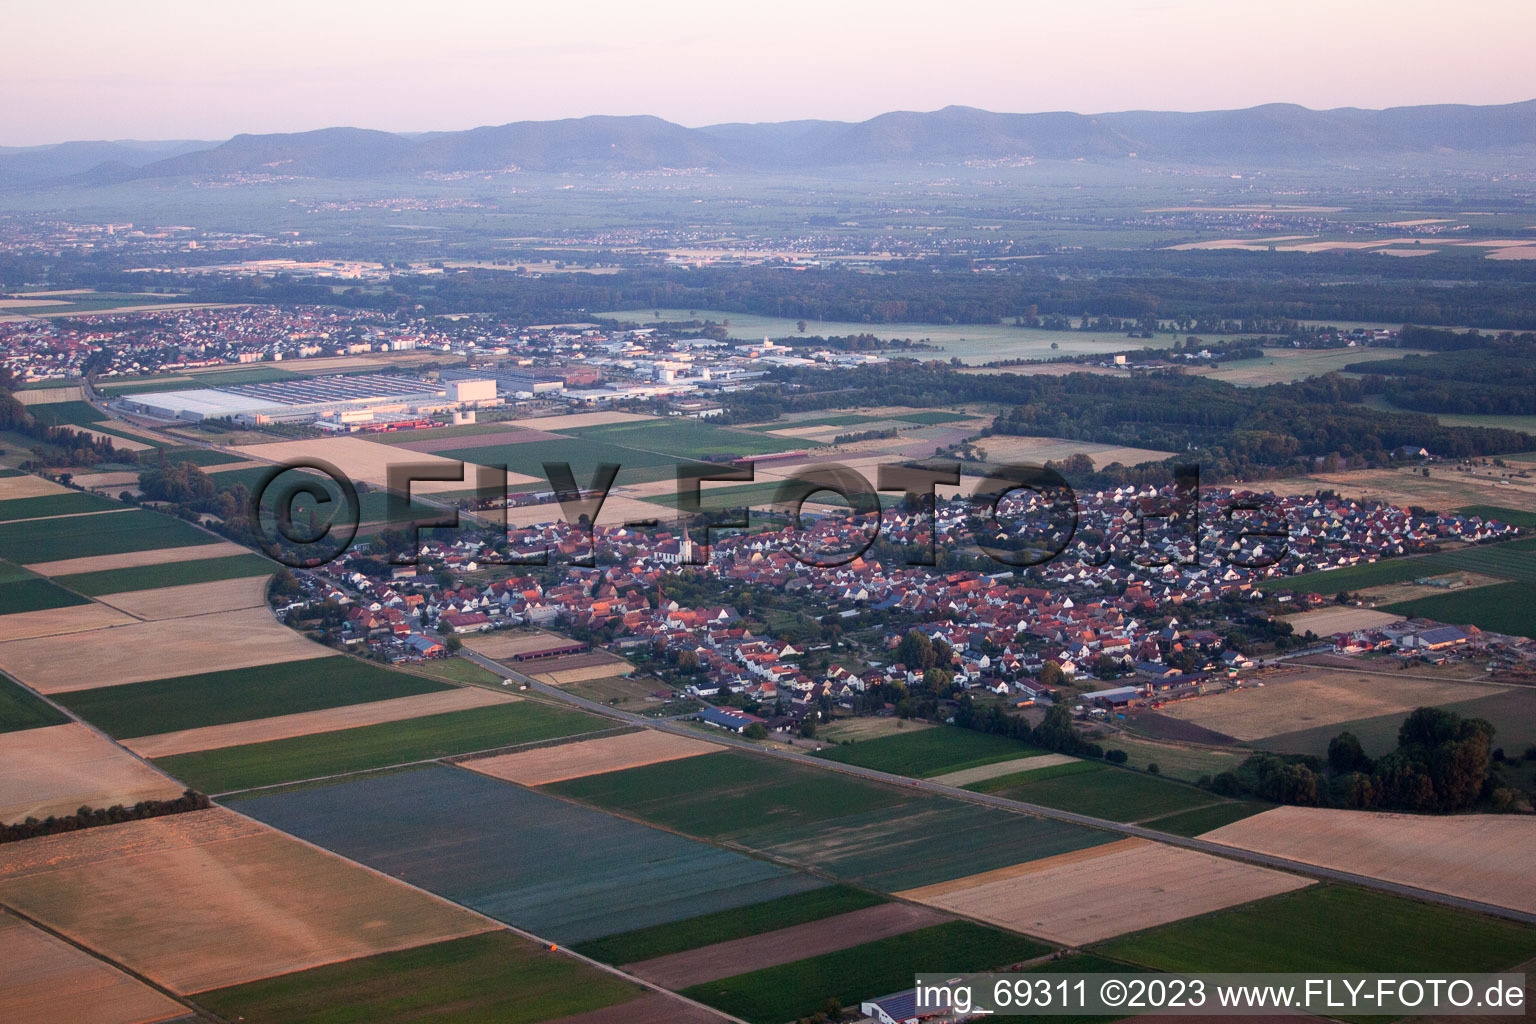 Drohnenbild von Ottersheim in Ottersheim bei Landau im Bundesland Rheinland-Pfalz, Deutschland